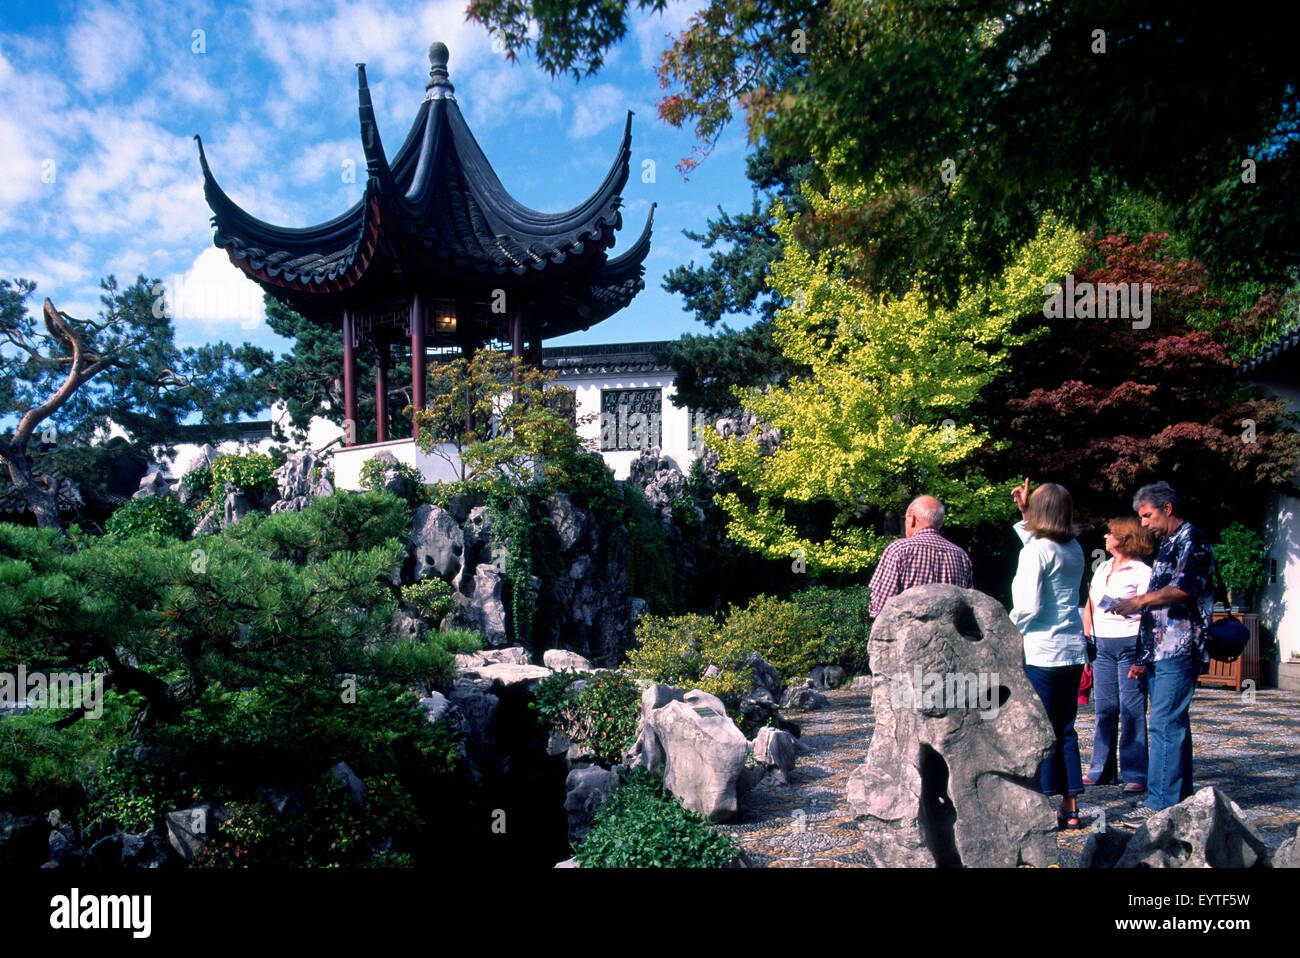 Il dott. Sun Yat-Sen classico giardino Cinese in Chinatown, Vancouver, BC, British Columbia, Canada - i turisti in visita alla Pagoda Foto Stock